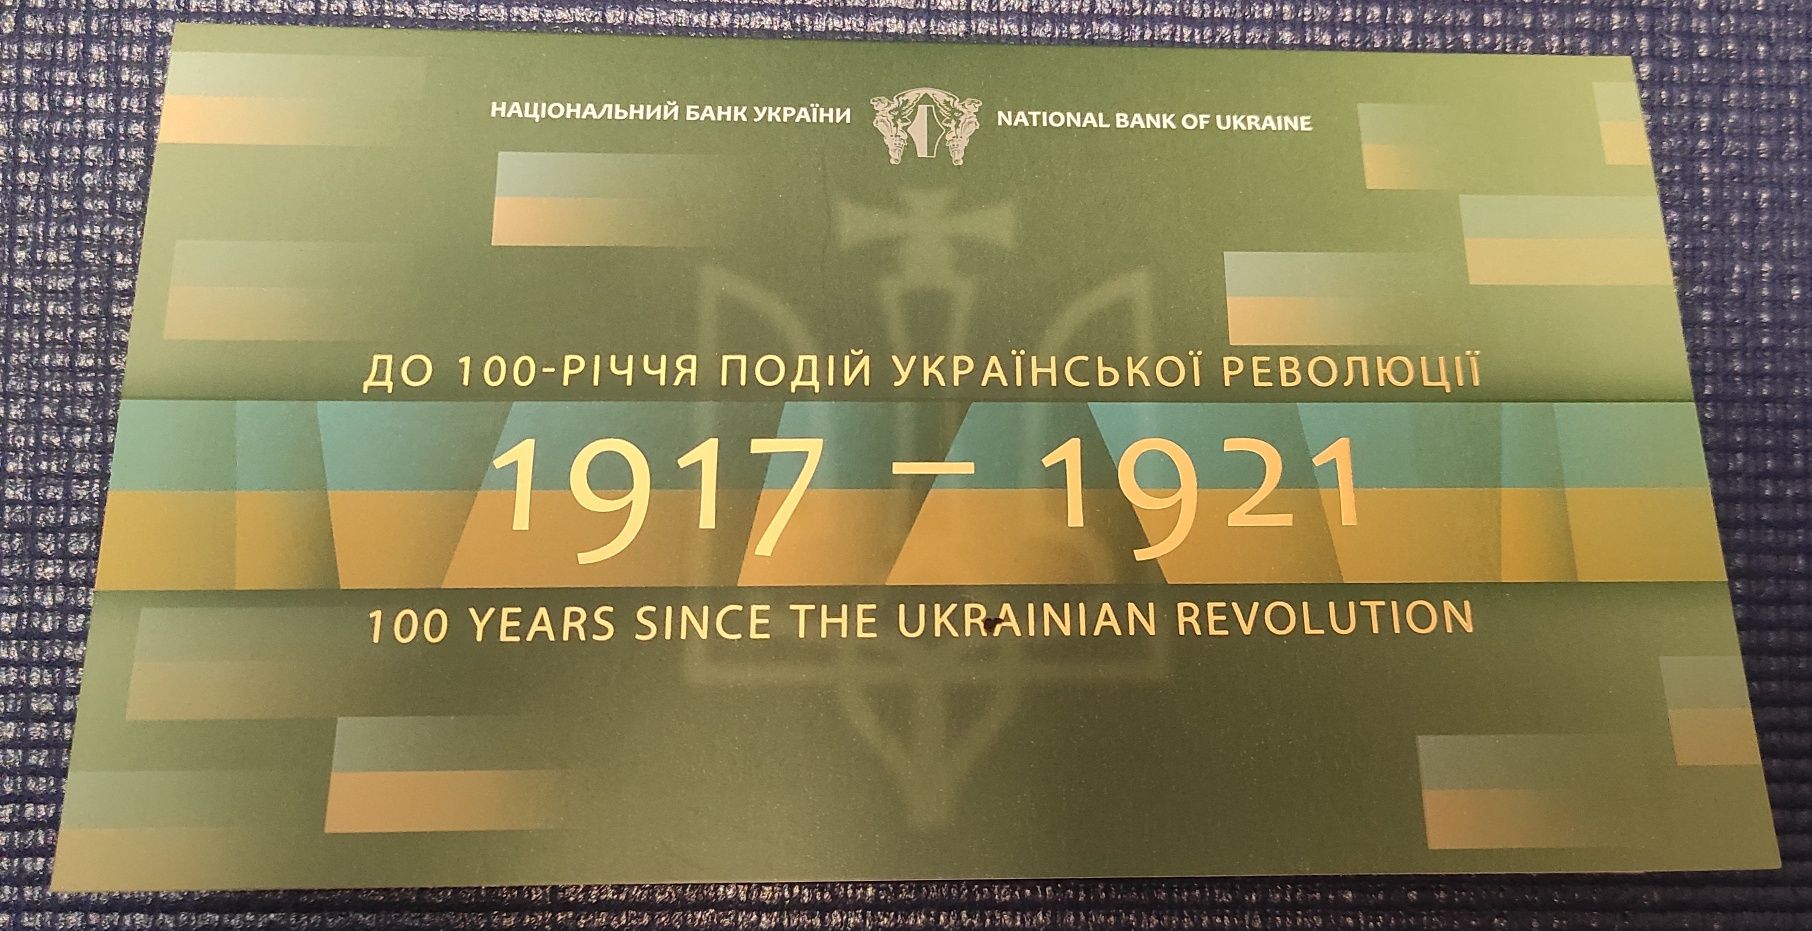 Сто карбованців банкнота  в сувенірній упаковці, 100 річчя подій Украї